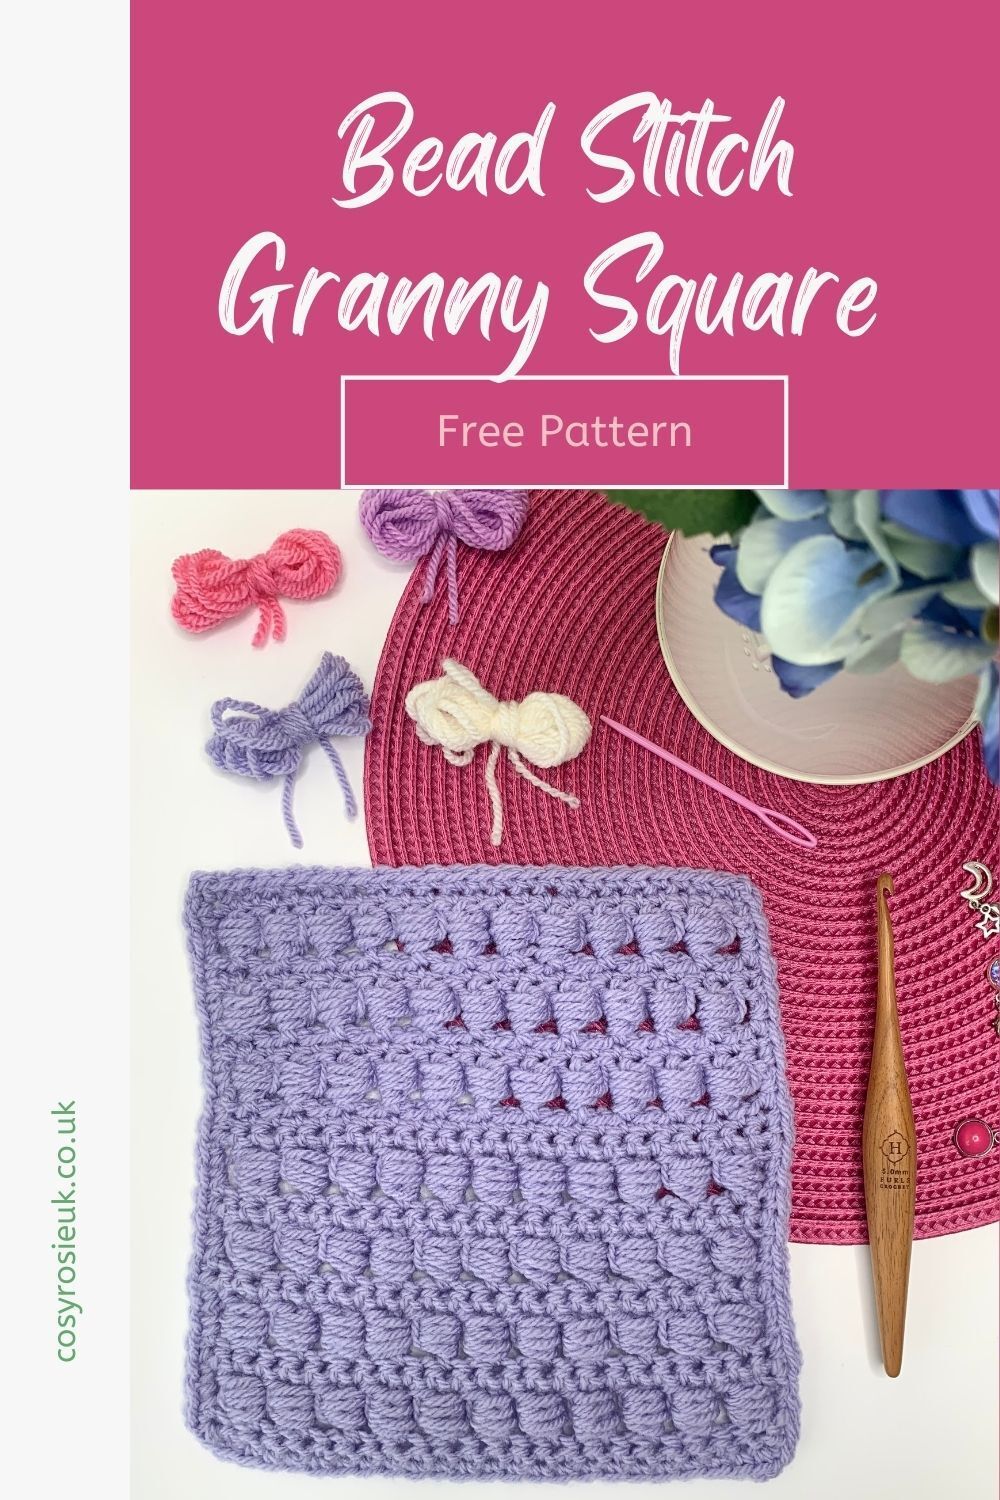 Bead stitch granny square